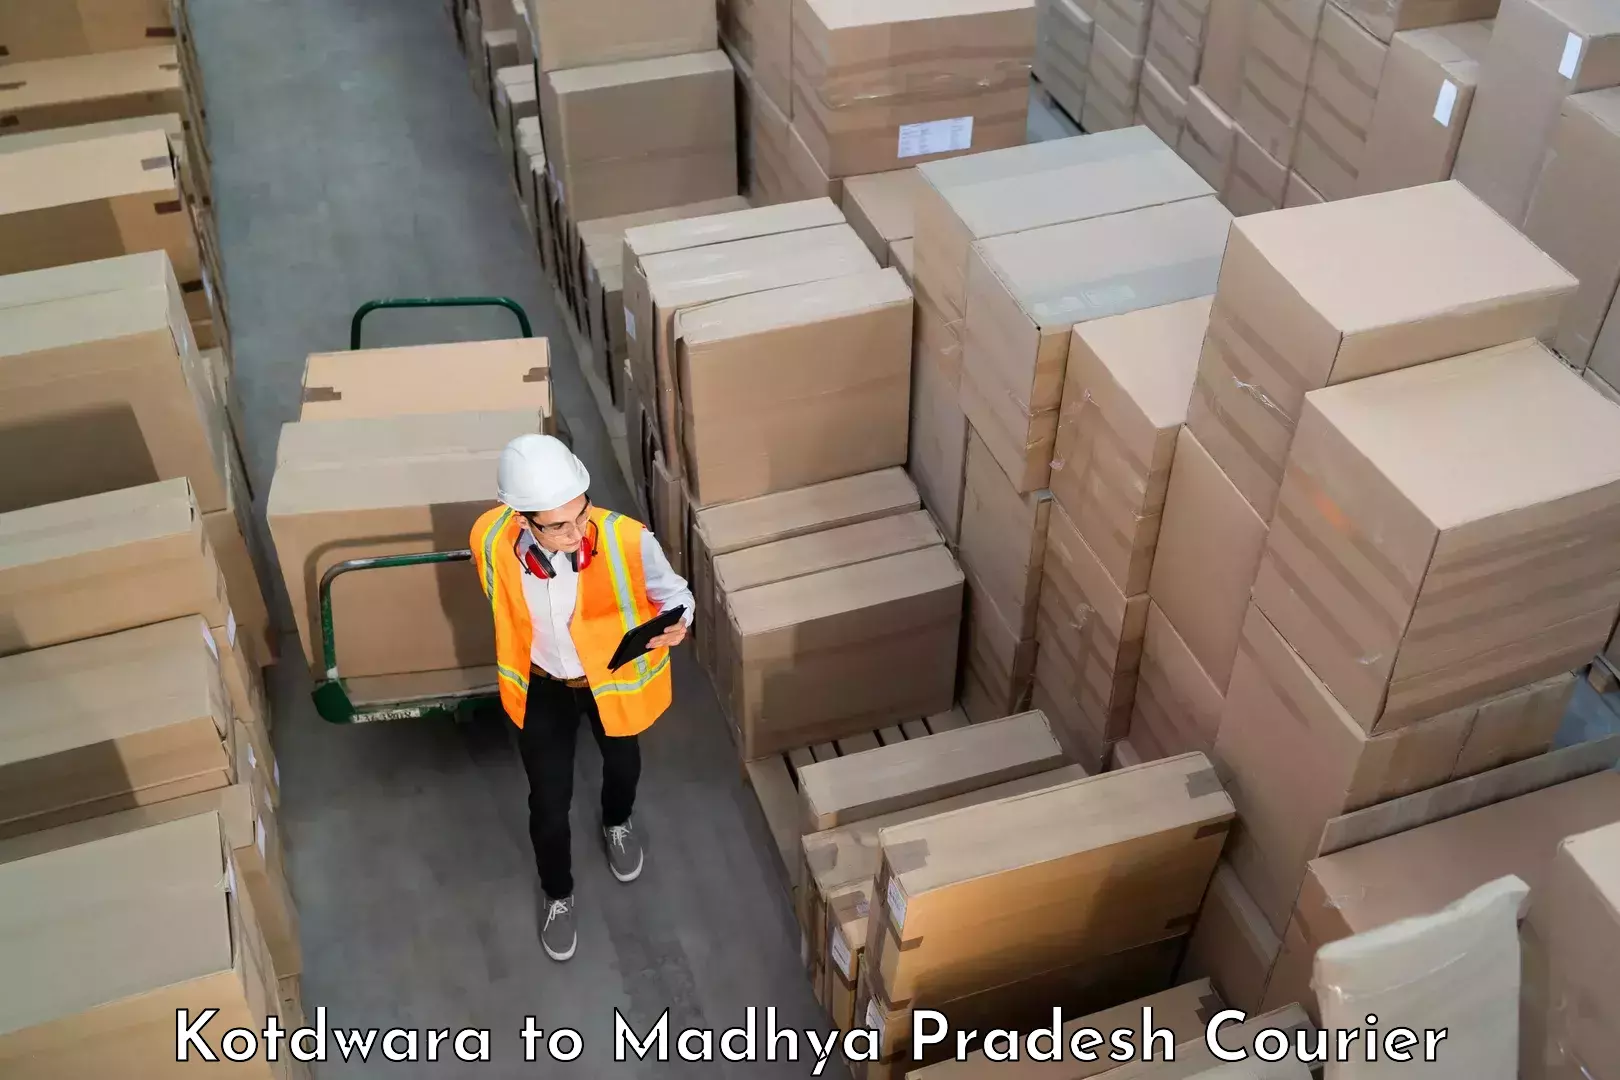 Digital baggage courier Kotdwara to Mandideep